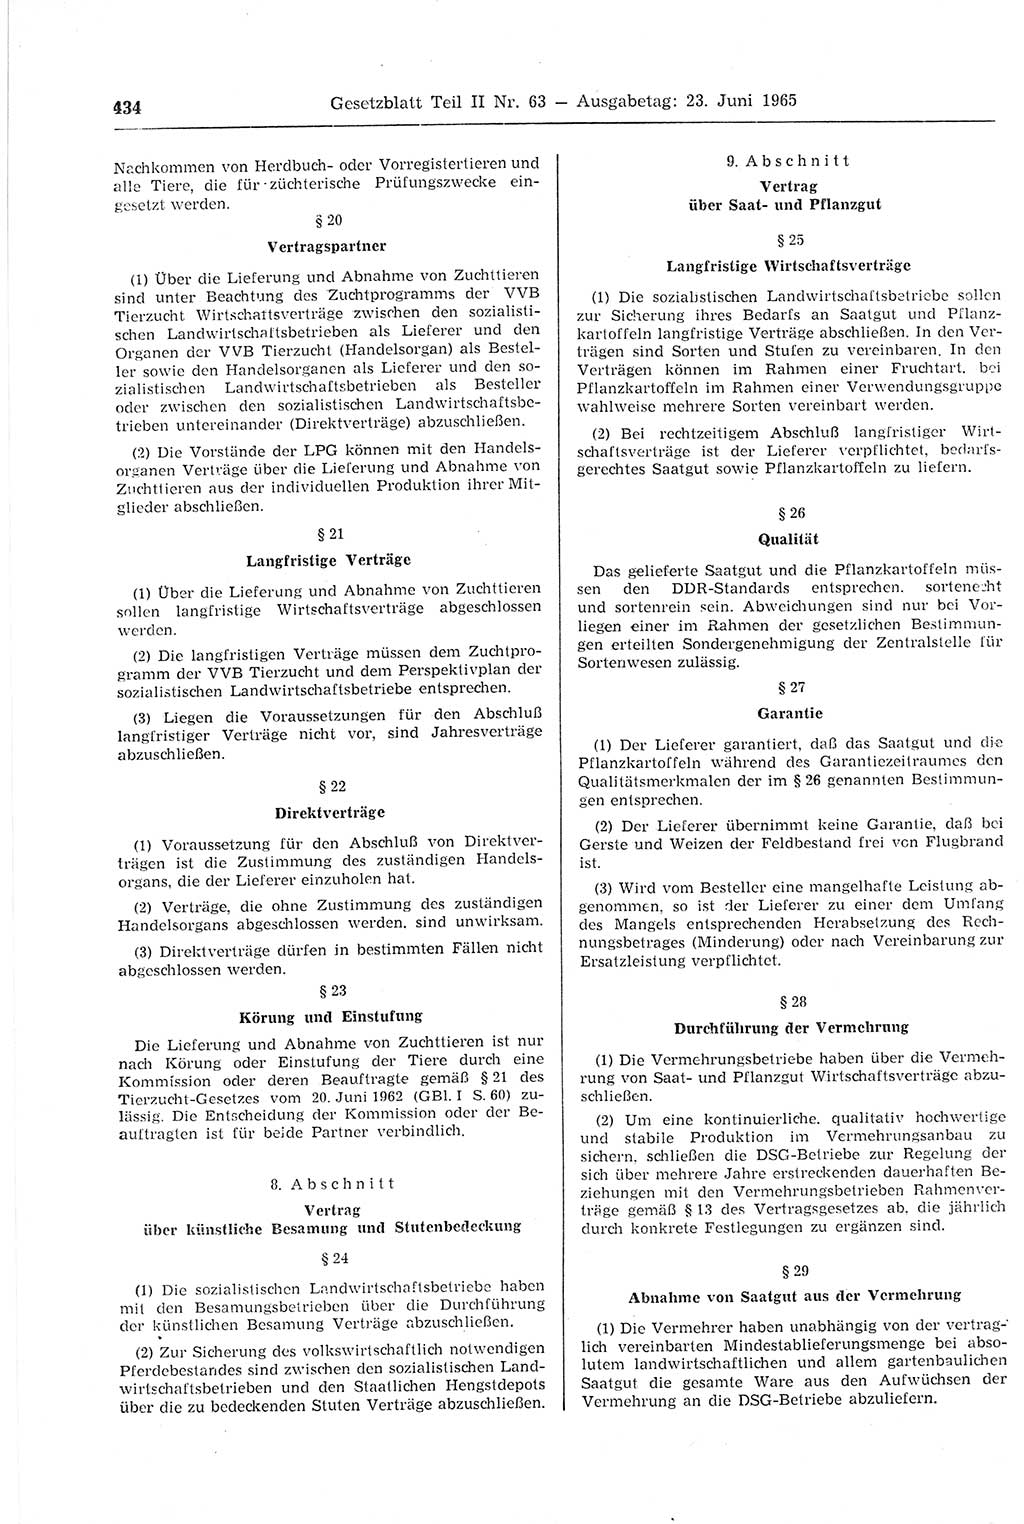 Gesetzblatt (GBl.) der Deutschen Demokratischen Republik (DDR) Teil ⅠⅠ 1965, Seite 434 (GBl. DDR ⅠⅠ 1965, S. 434)